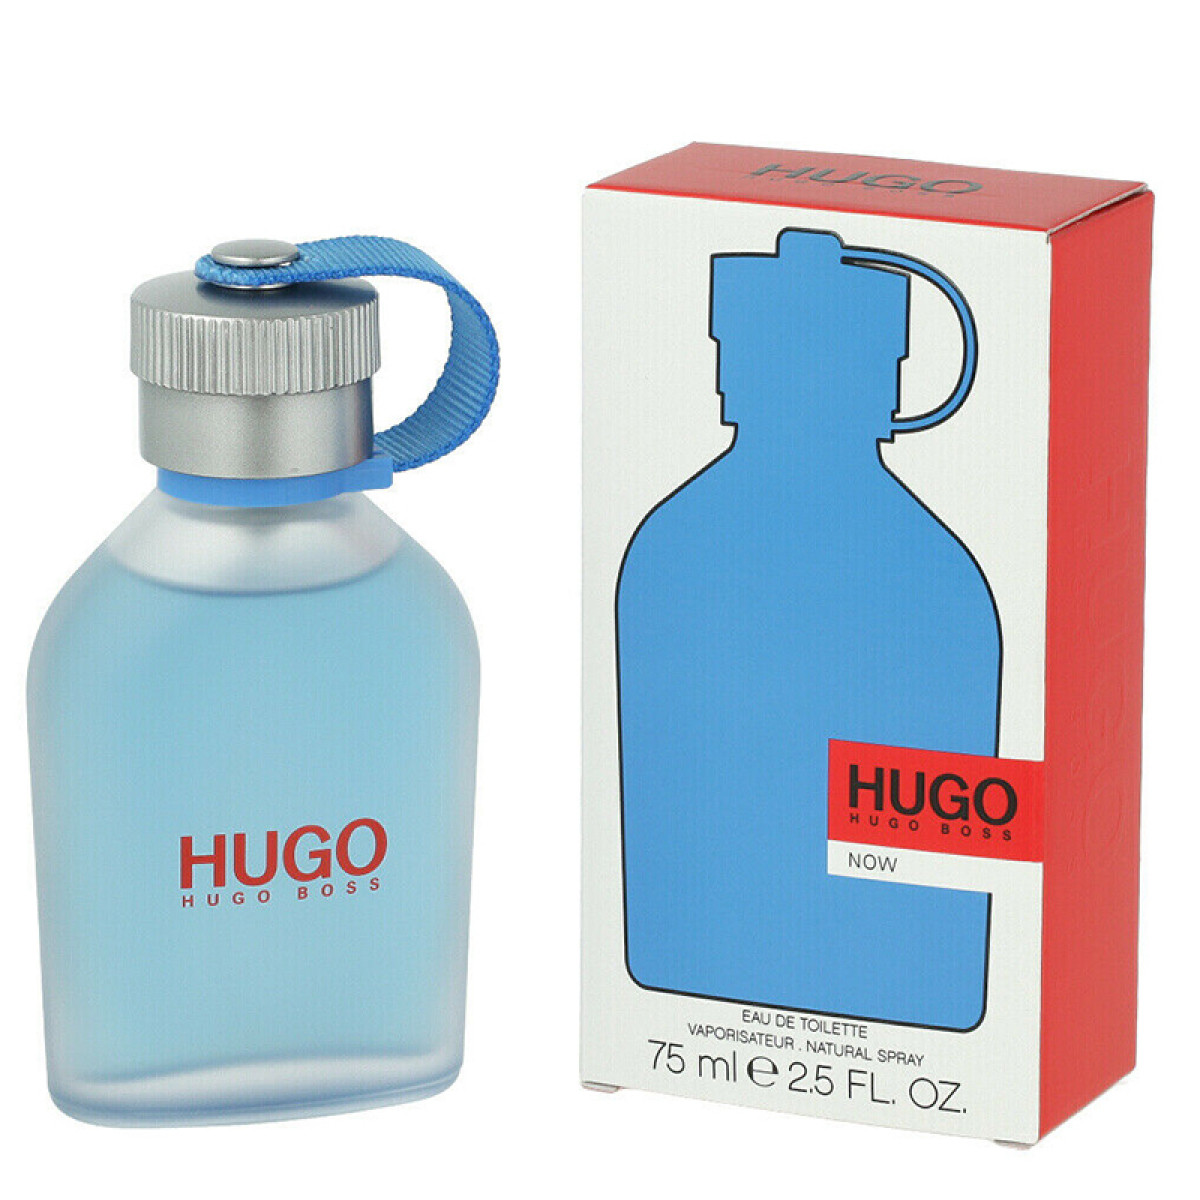 Hugo Boss Hugo Now 75ml EDT Tester